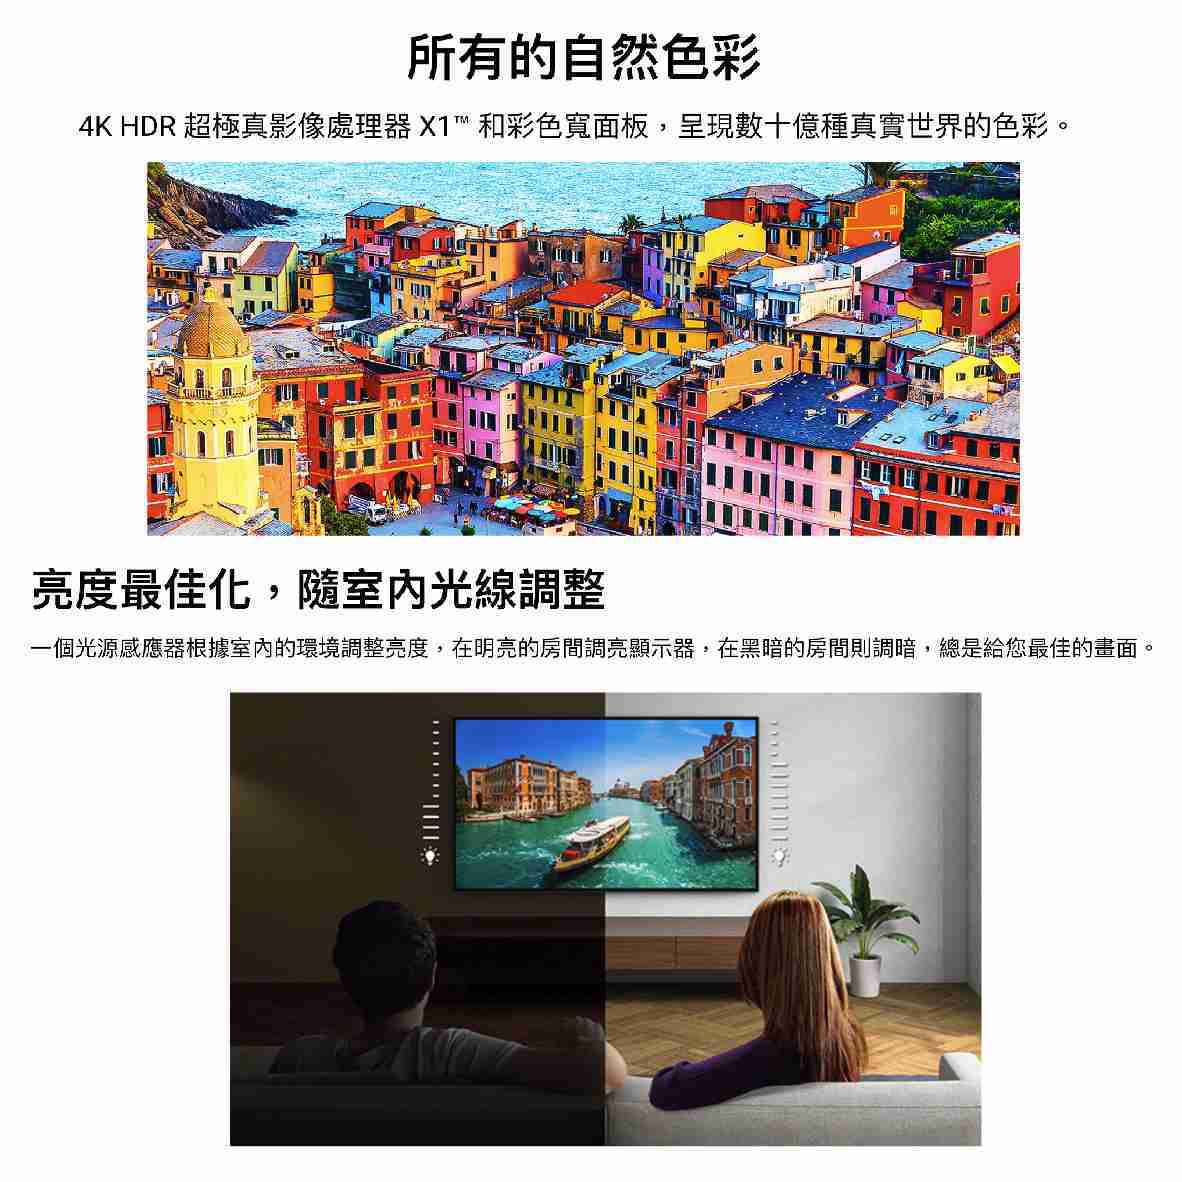 SONY 索尼 KM-65X80L 65吋 4K HDR LCD Google TV 電視 2023 | 金曲音響